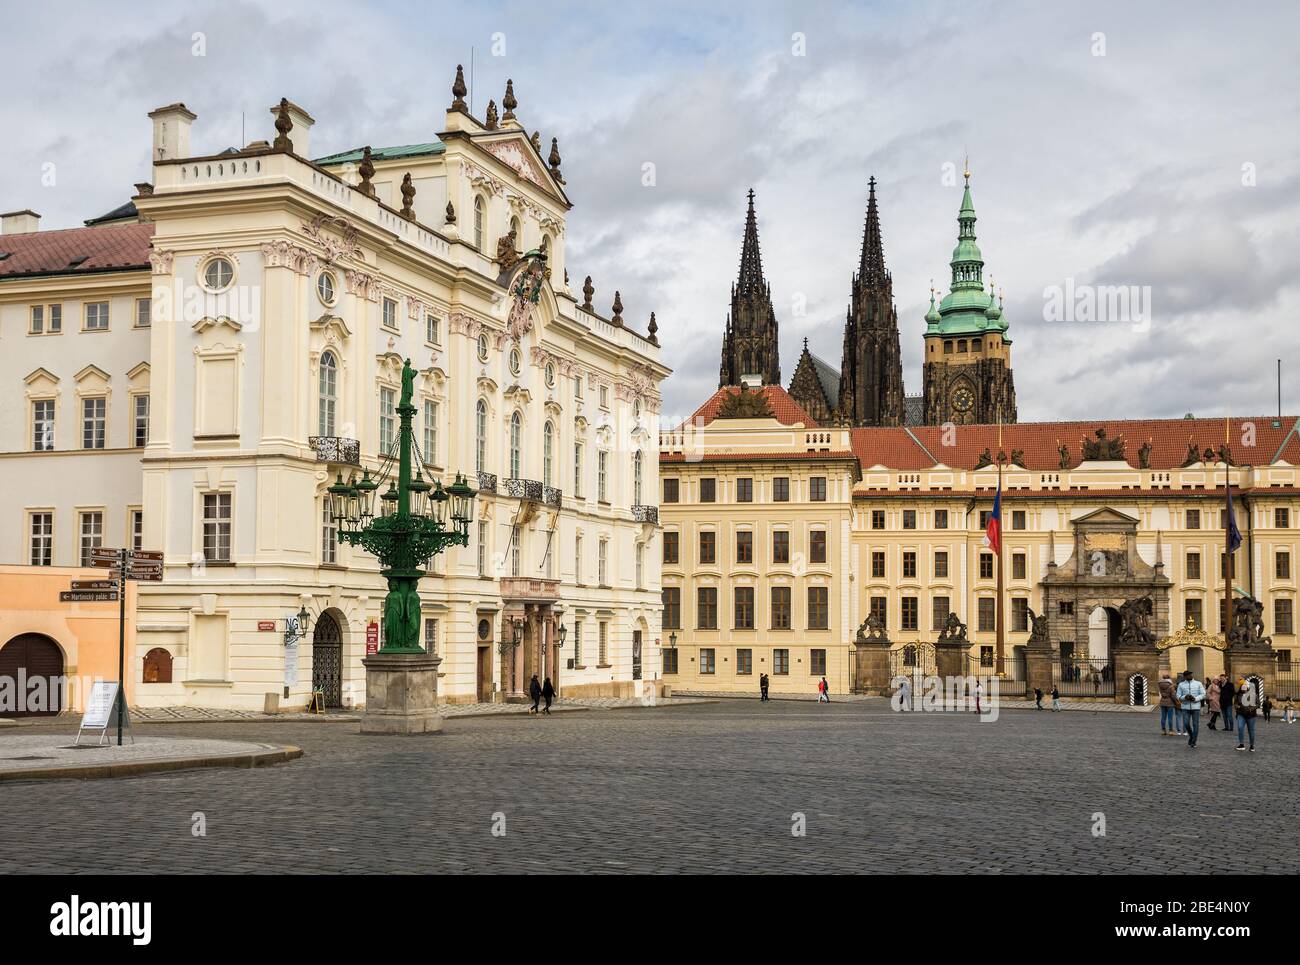 PRAGUE, CZECH REPUBLIC - MARCH 10, 2020: Hradcanske Square, the Archbishop Palace and Prague Castle. Tourists visit attractions Stock Photo